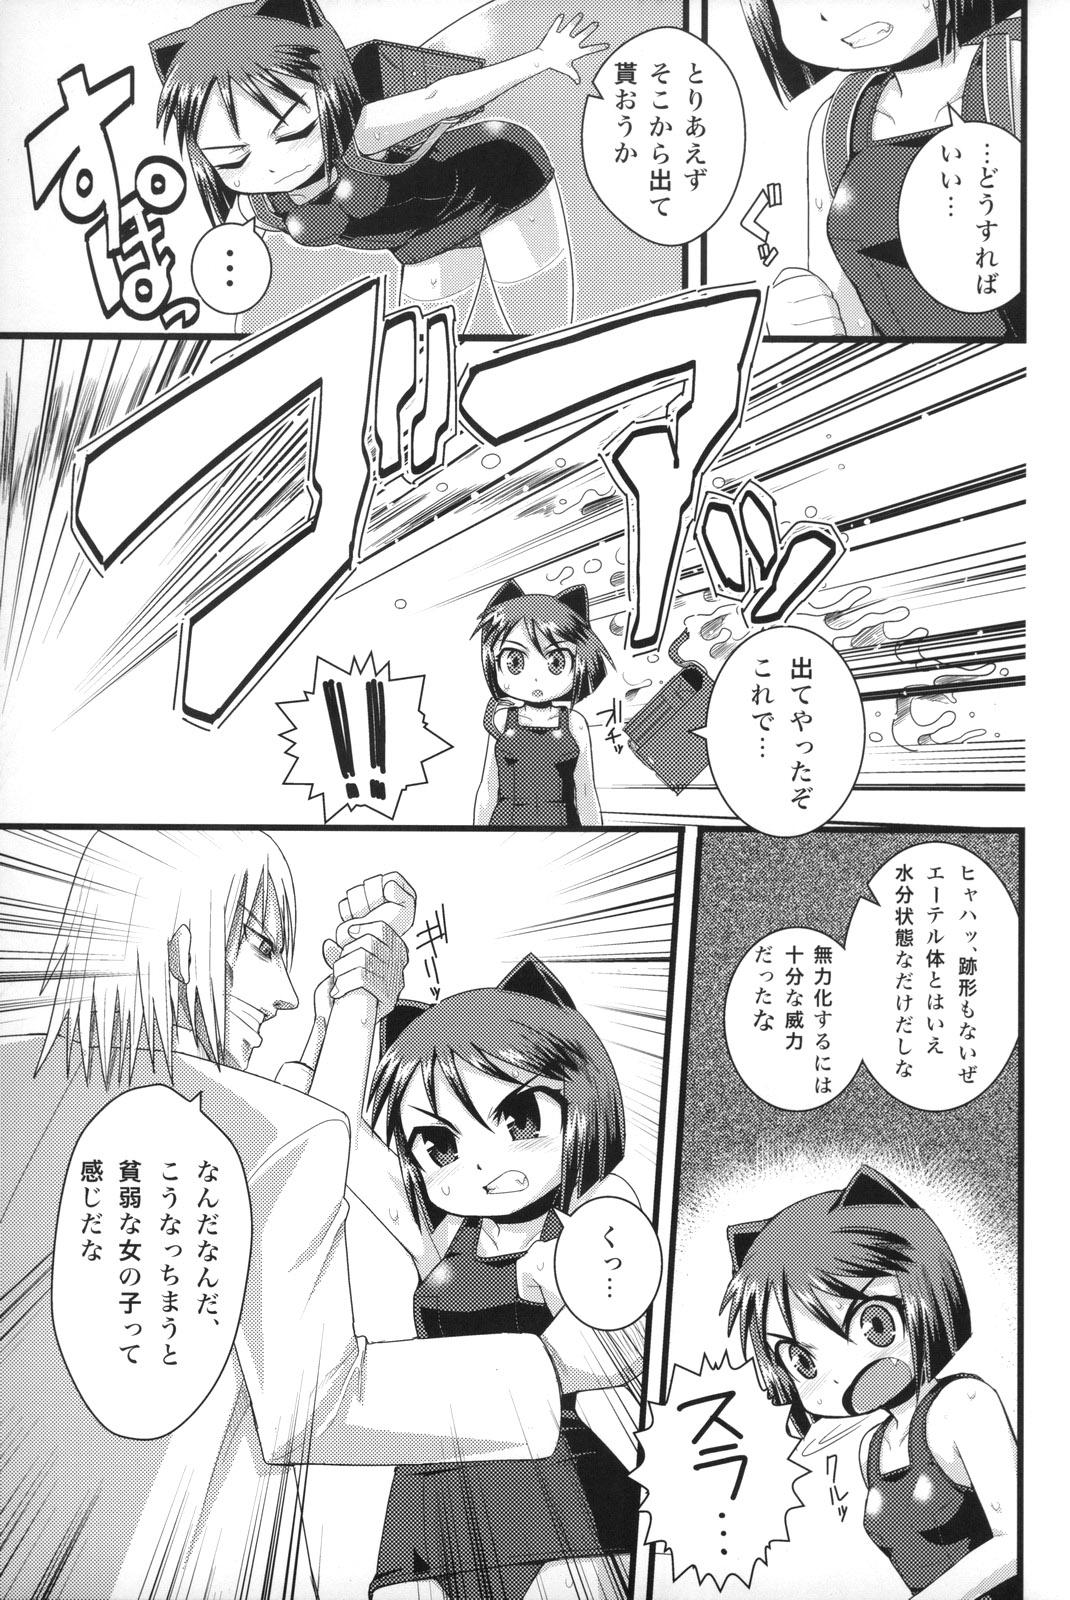 Spying Tensai Banzai Daikassai! - Arcana heart Longhair - Page 6